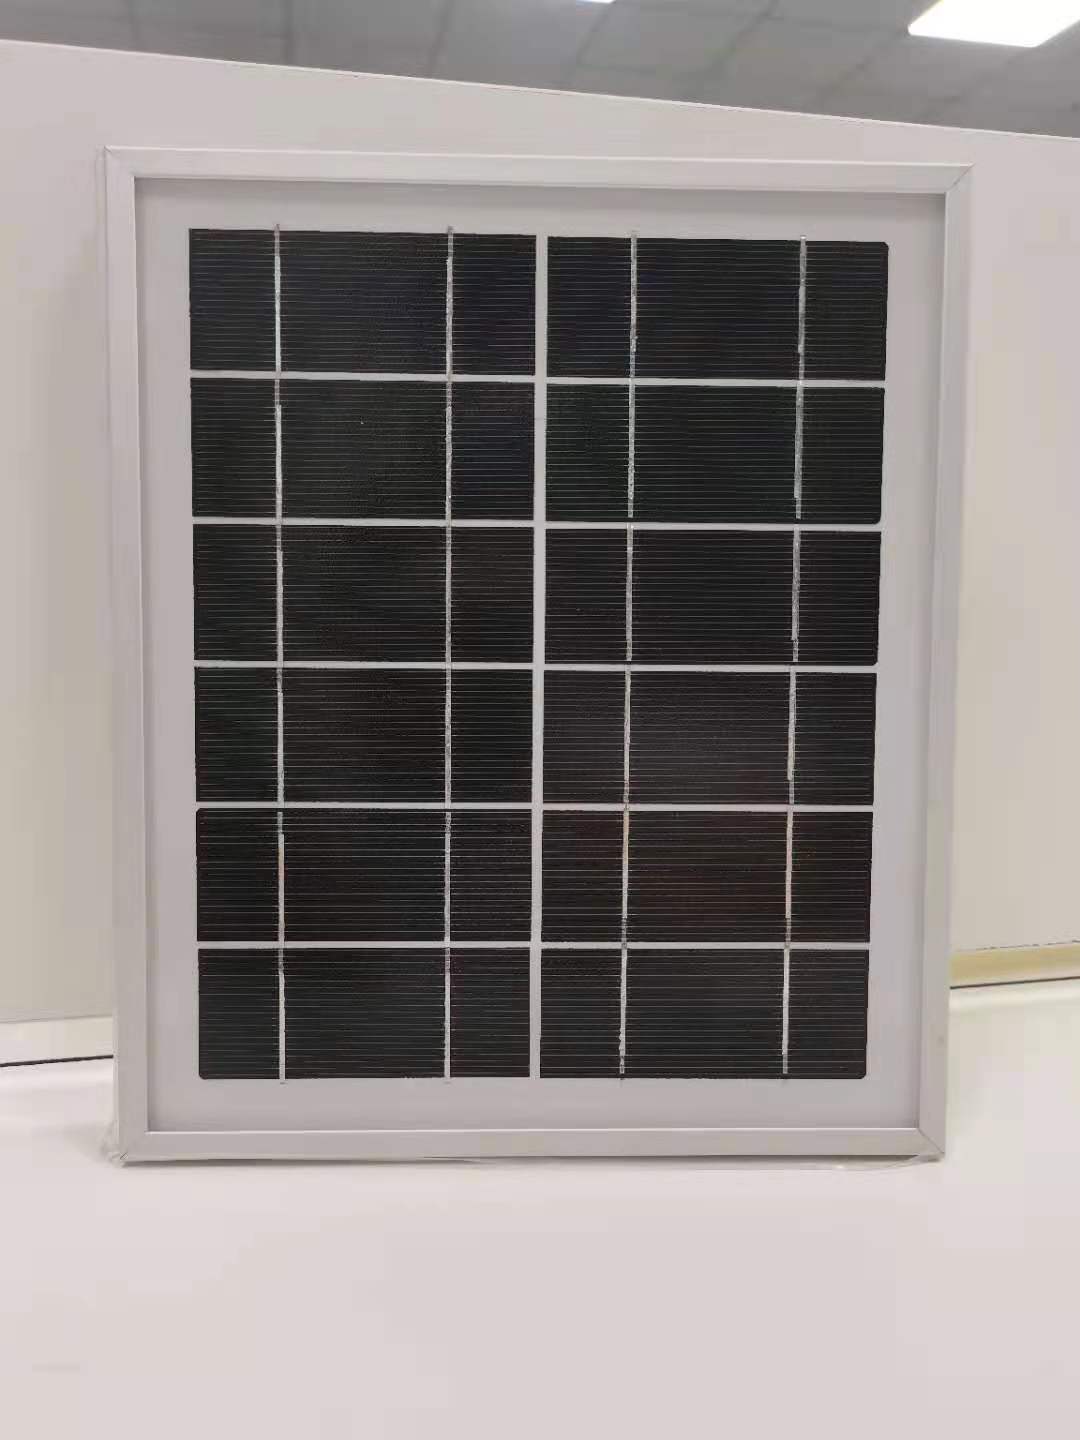 太阳能板 监控太阳能板 深圳太阳能板厂家 深圳市天成太阳能技术有限公司图片